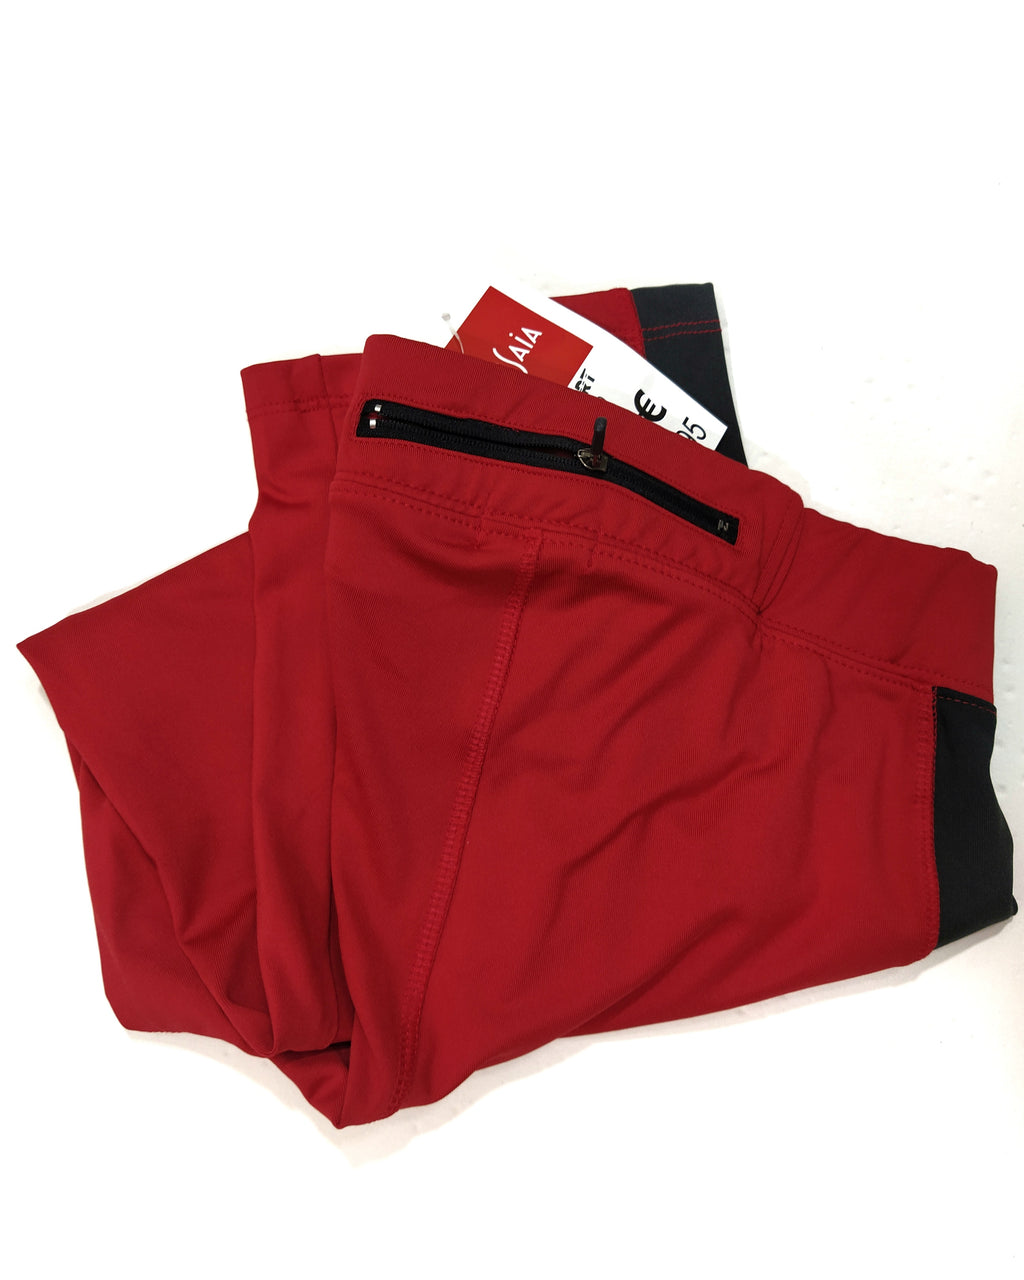 TISSAIA® Sports Leggings - Noir/Red Short